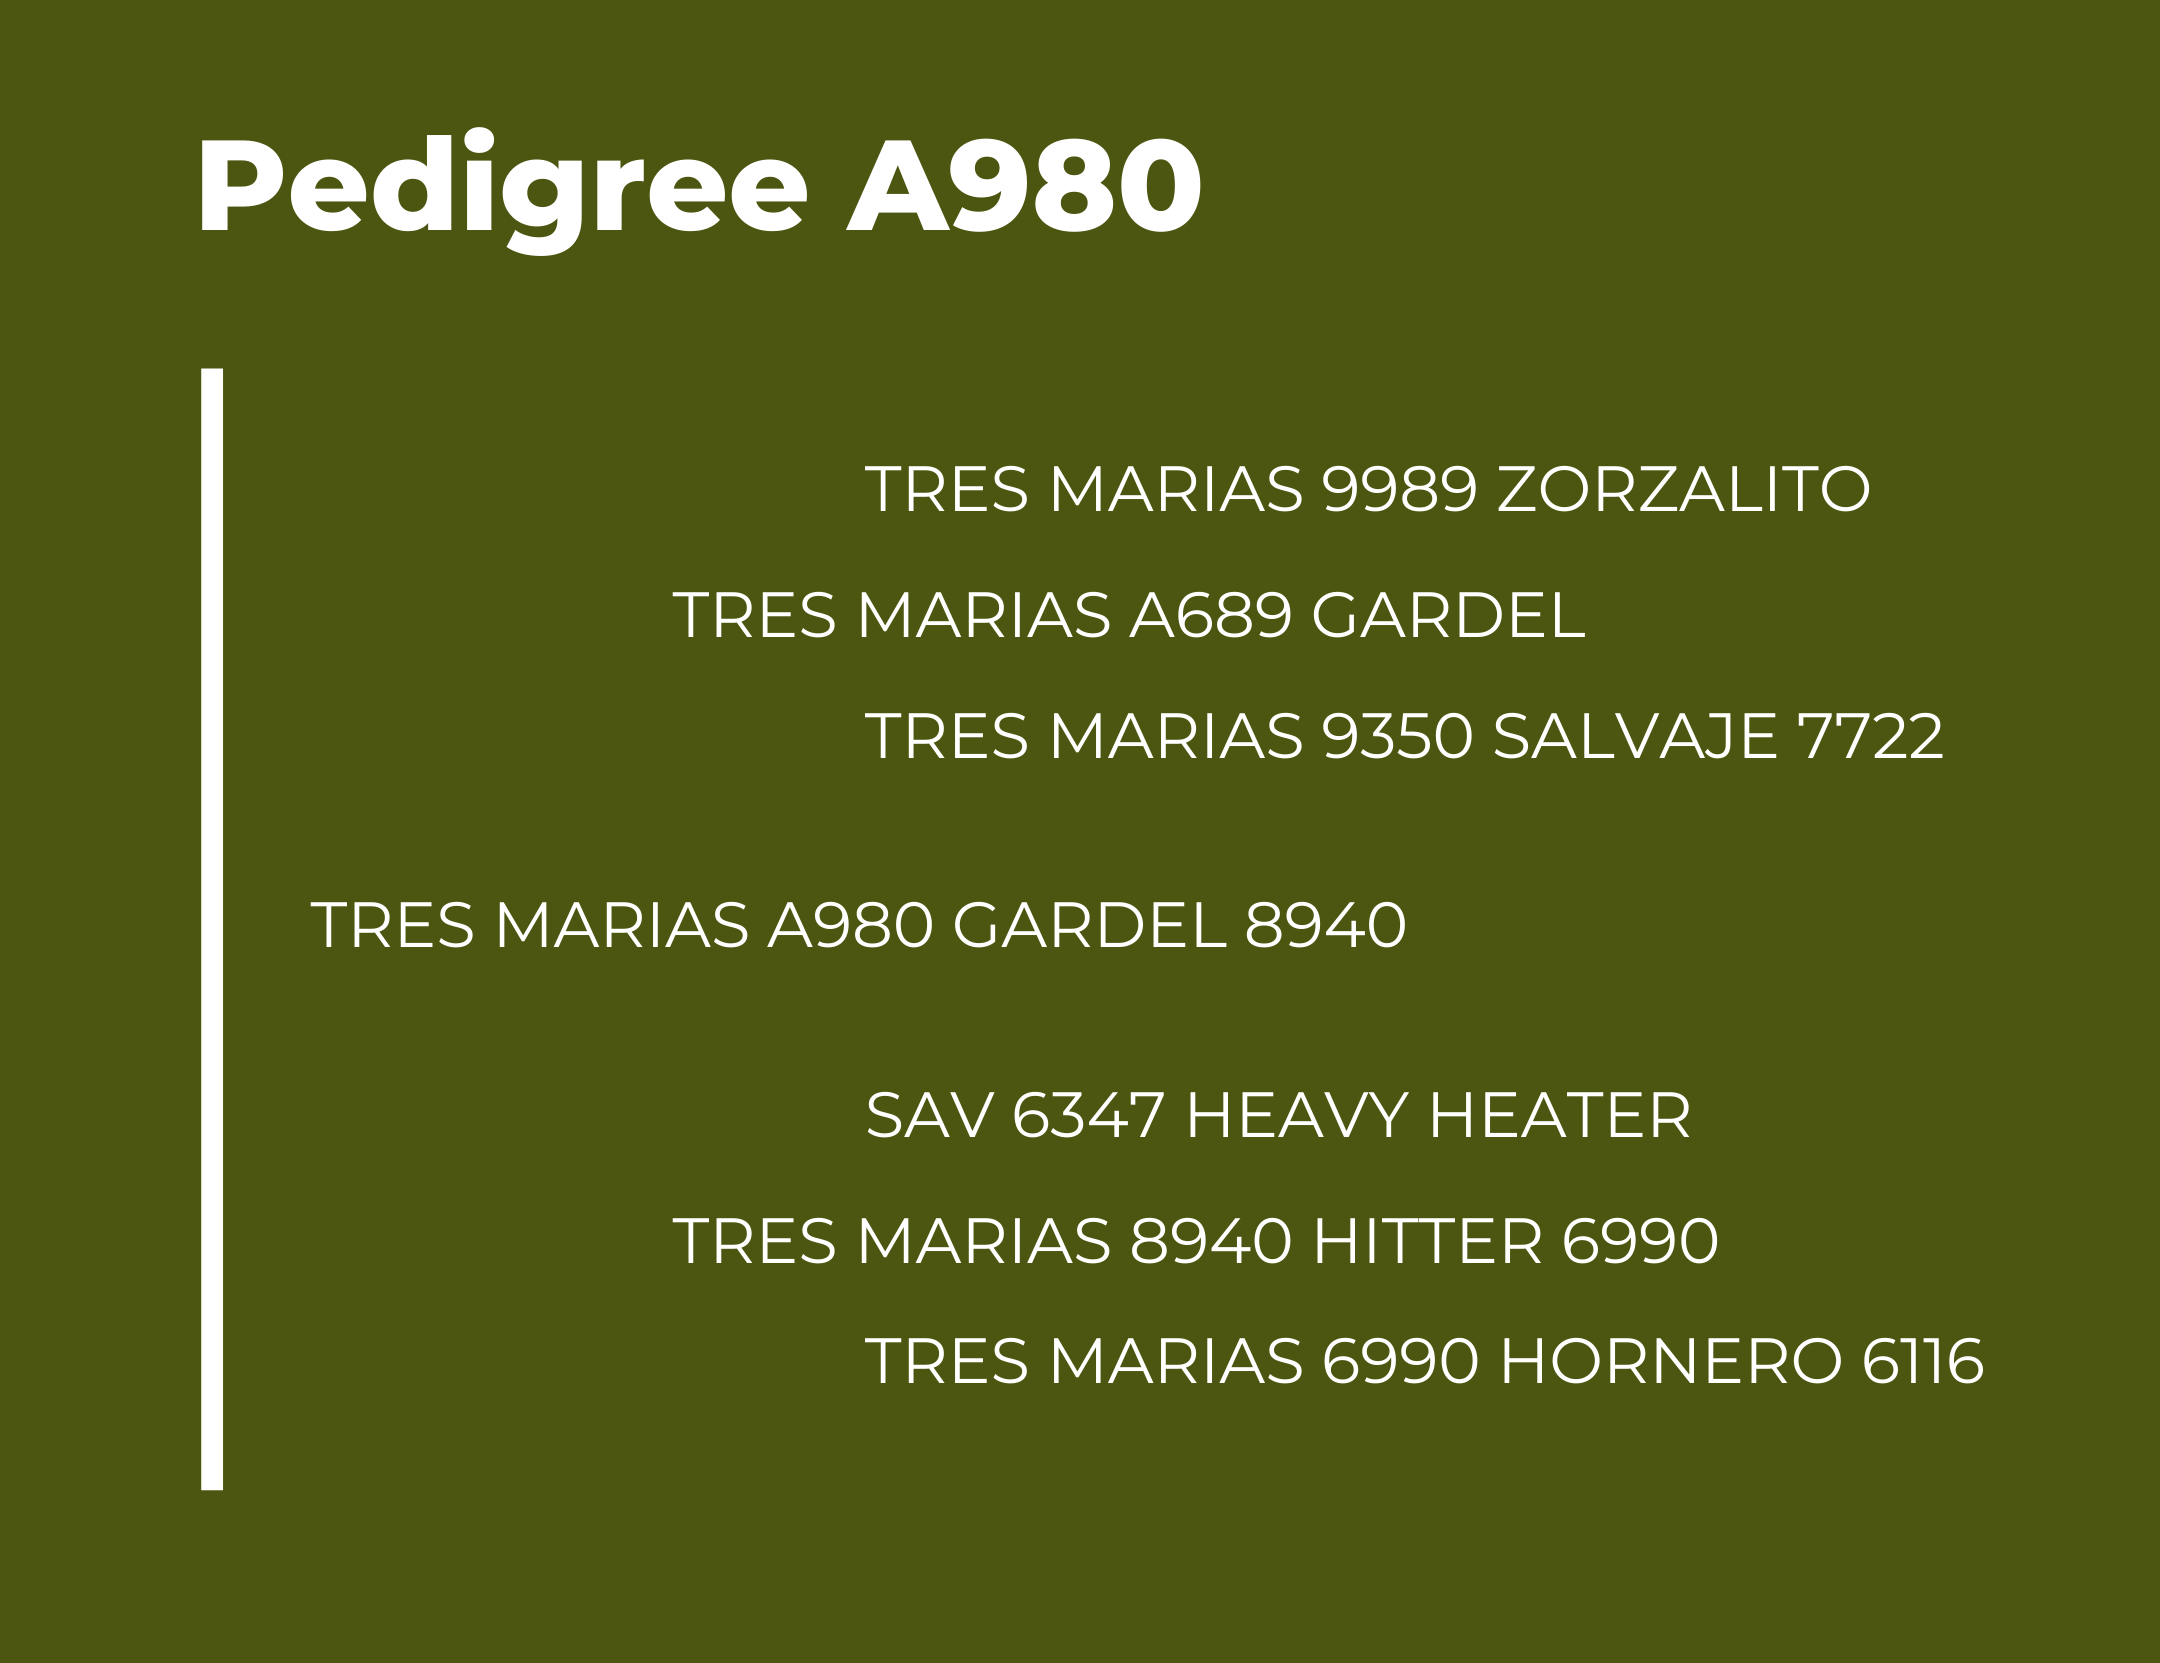 Pedigree Tres Marias A980